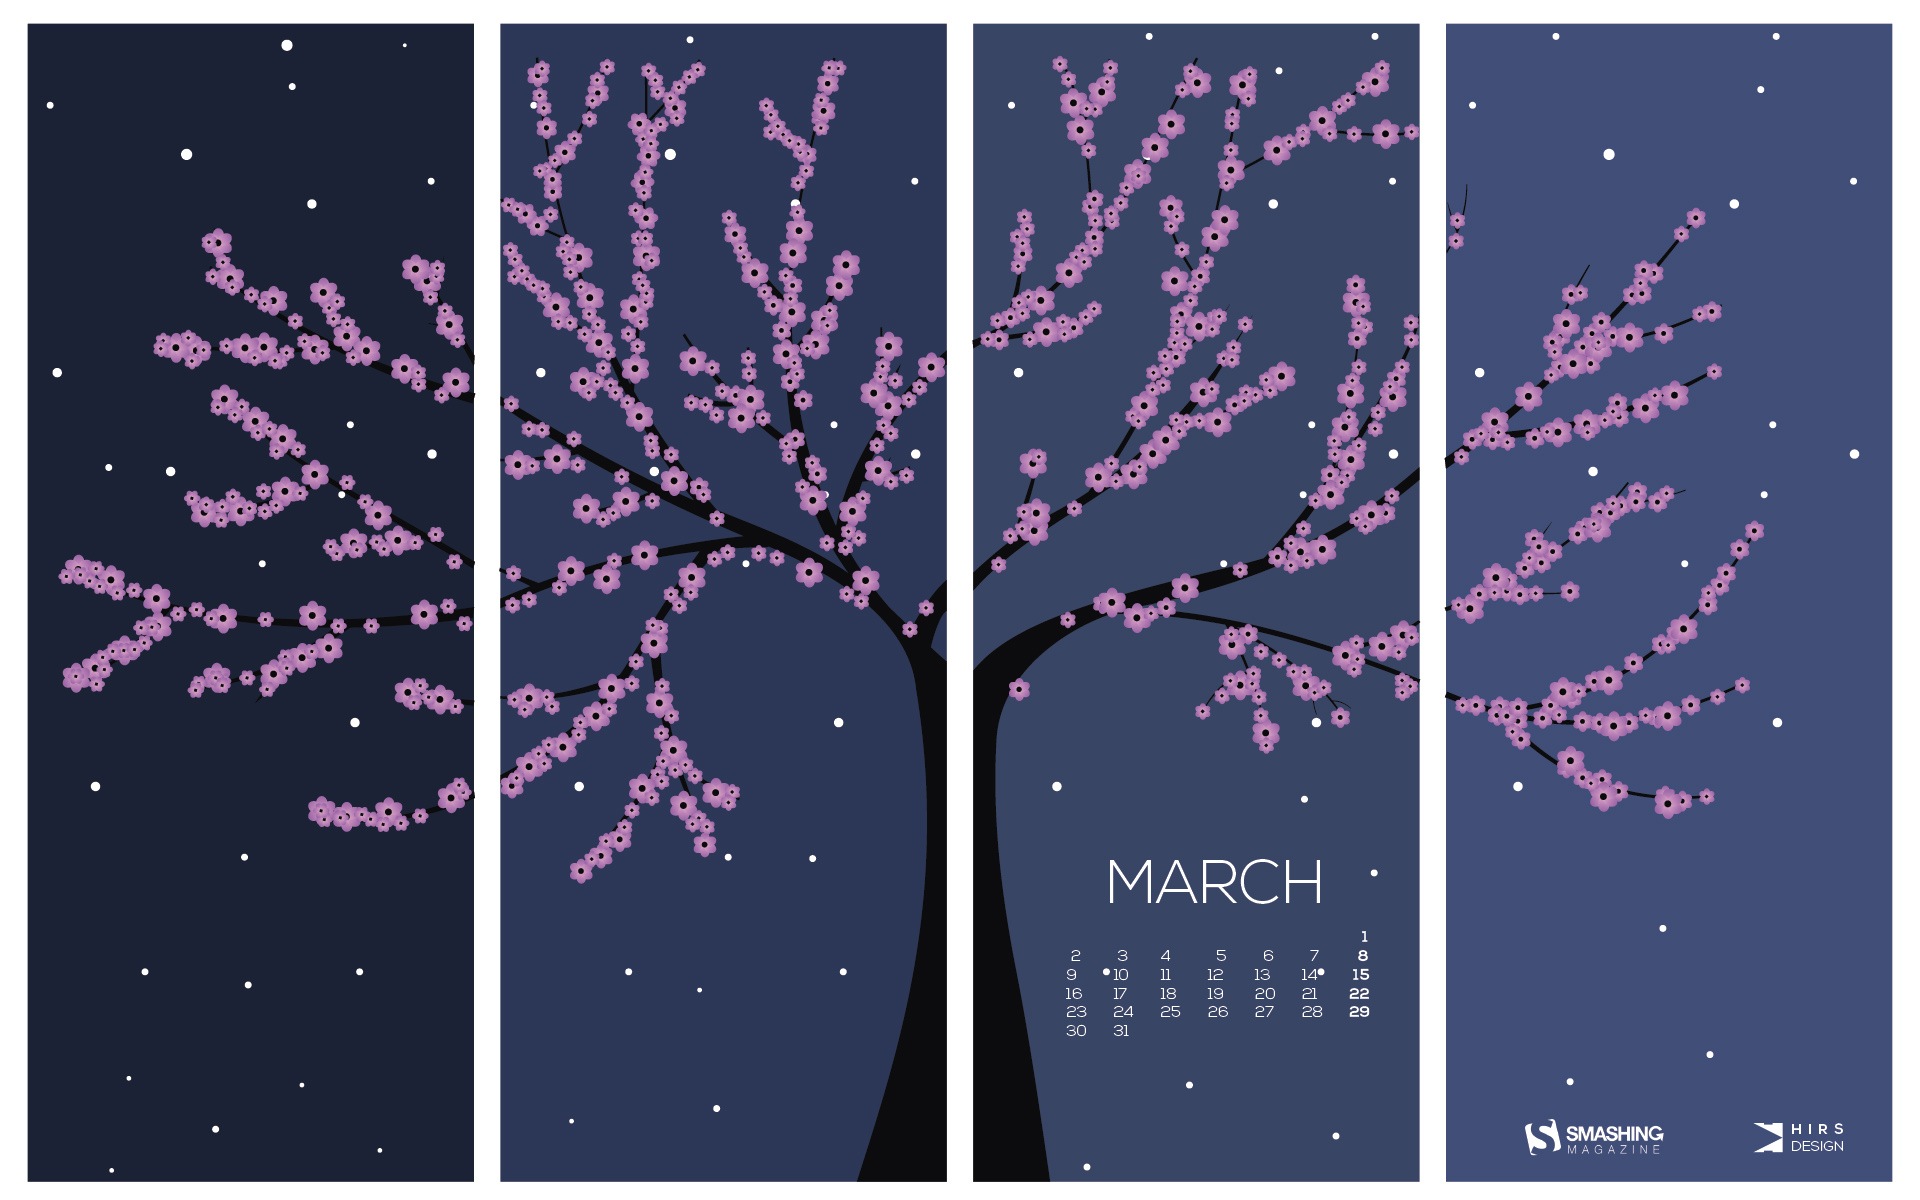 March 2015 Calendar wallpaper (2) #15 - 1920x1200